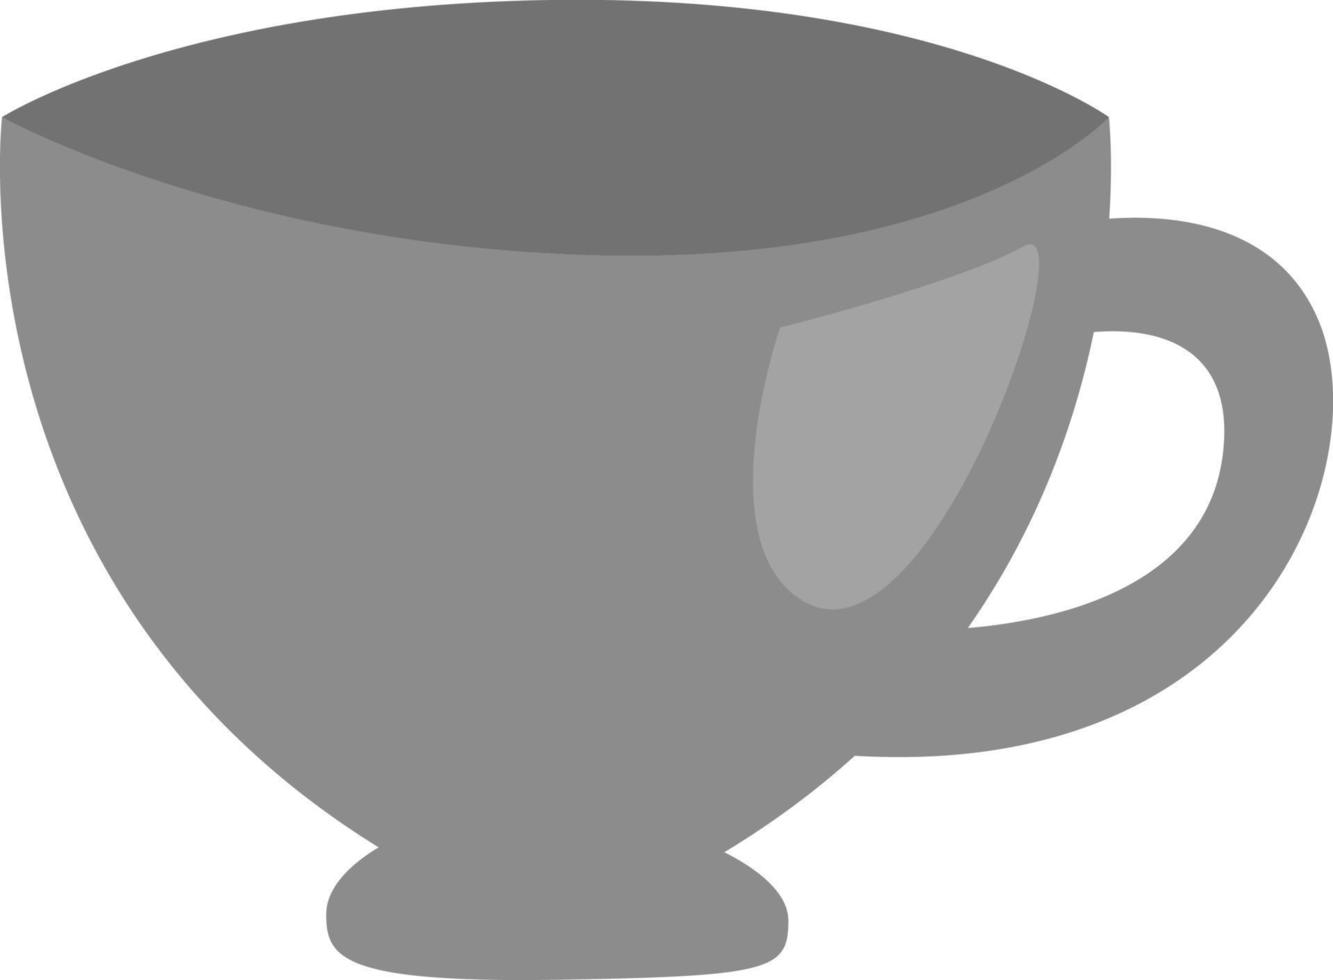 café dans une petite tasse en porcelaine, illustration, vecteur, sur fond blanc. vecteur